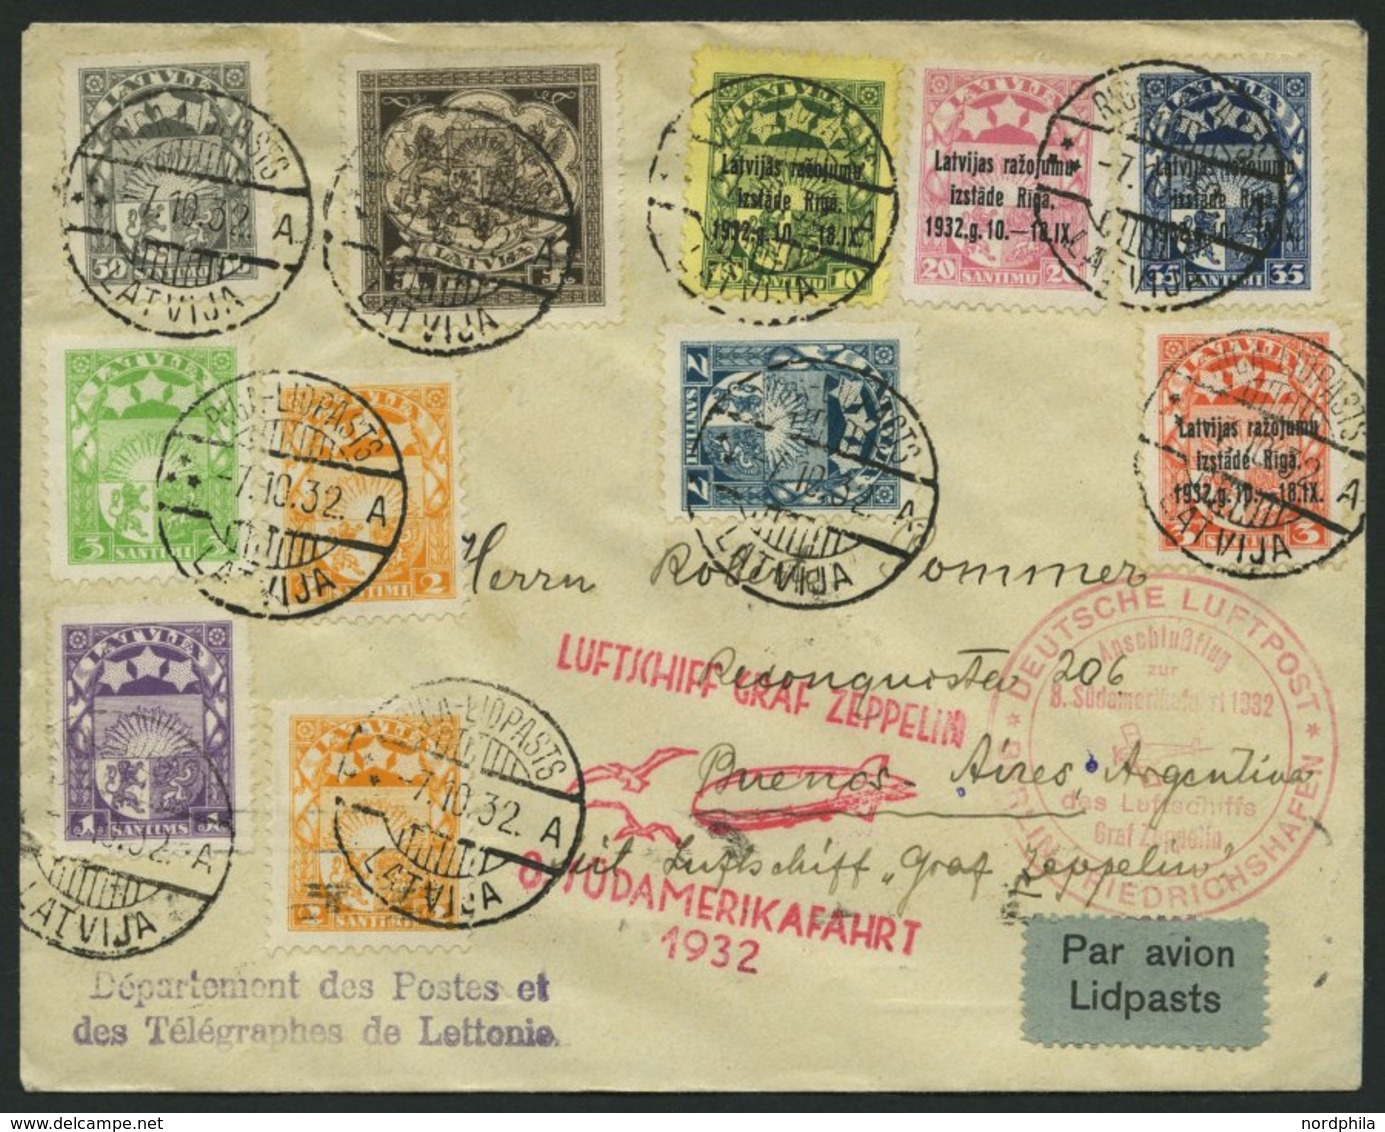 ZULEITUNGSPOST 189B BRIEF, Lettland: 1932, 8. Südamerikafahrt, Anschlußflug Ab Berlin, Prachtbrief - Airmail & Zeppelin